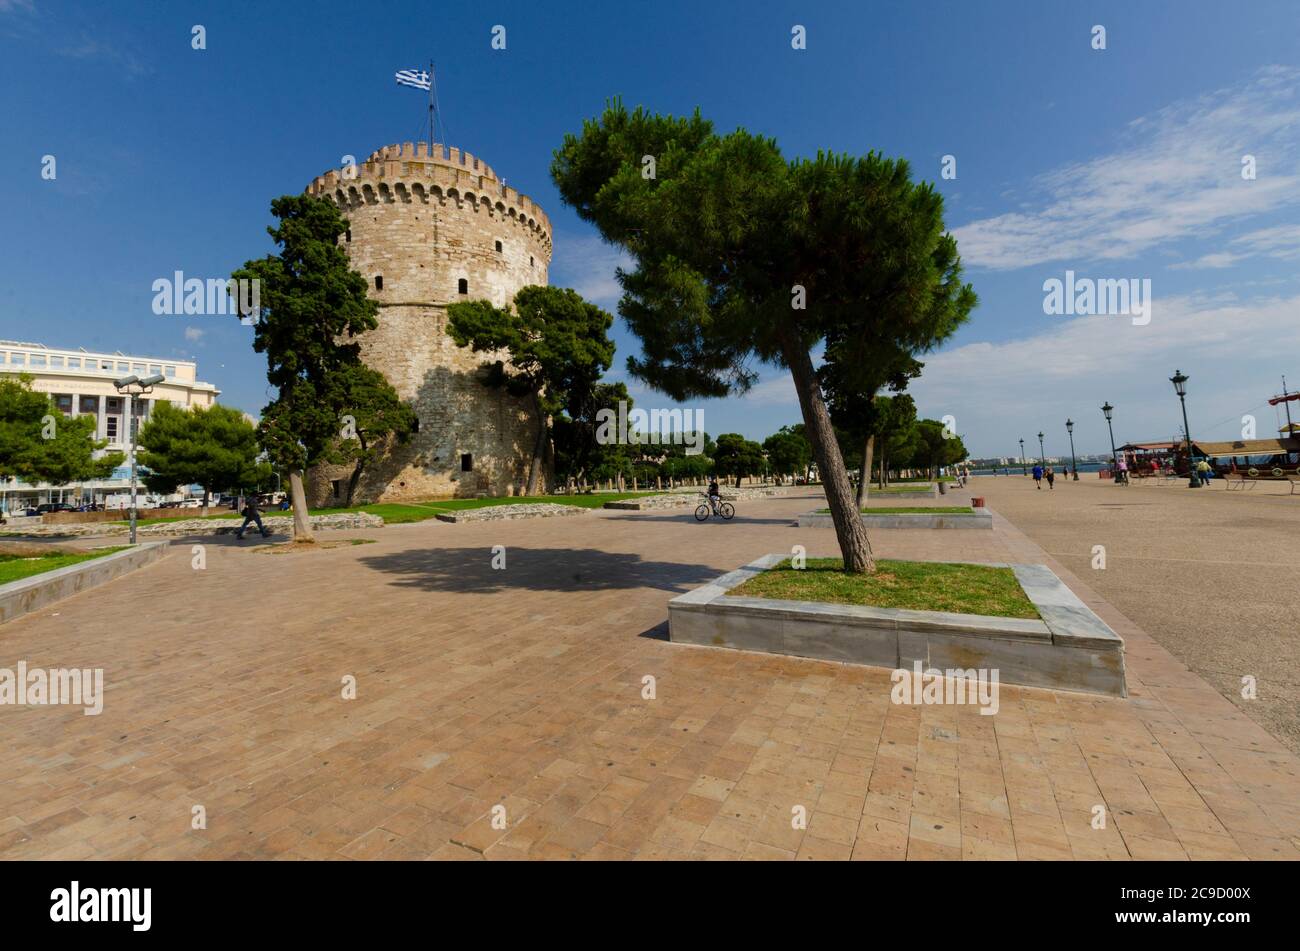 Gesamtansicht des berühmten Weißen Turms von Thessaloniki Mazedonien Griechenland. Dieses Wahrzeichen war früher eine osmanische Festung und ein Gefängnis Stockfoto